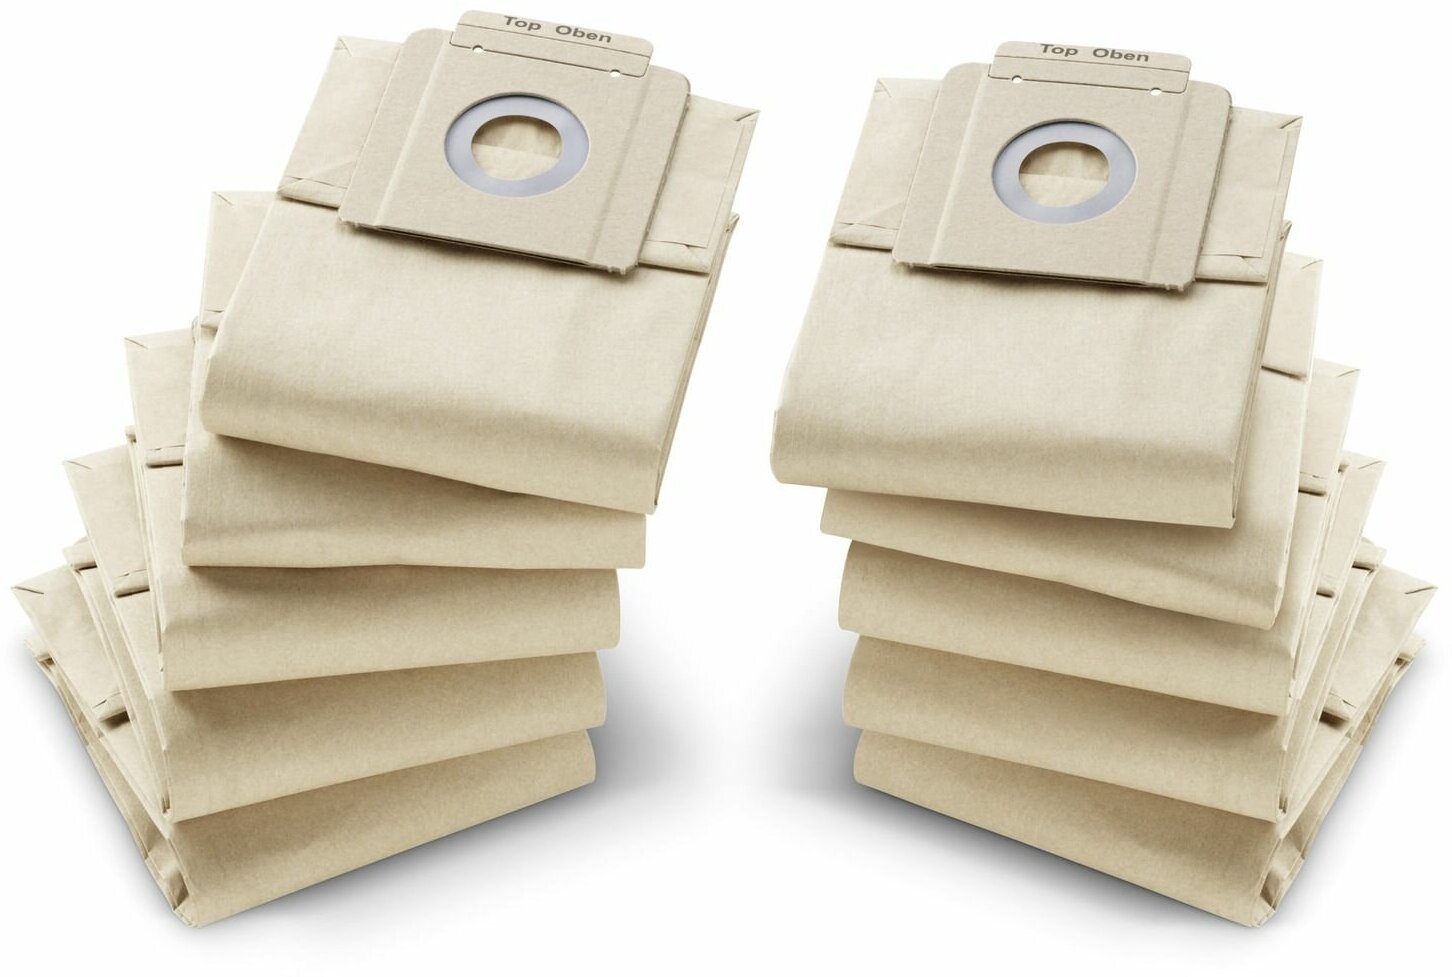 Фильтр-мешки бумажные для пылесосов T 7/1, 9/1, 10/1, 10 шт (6.904-333.0)